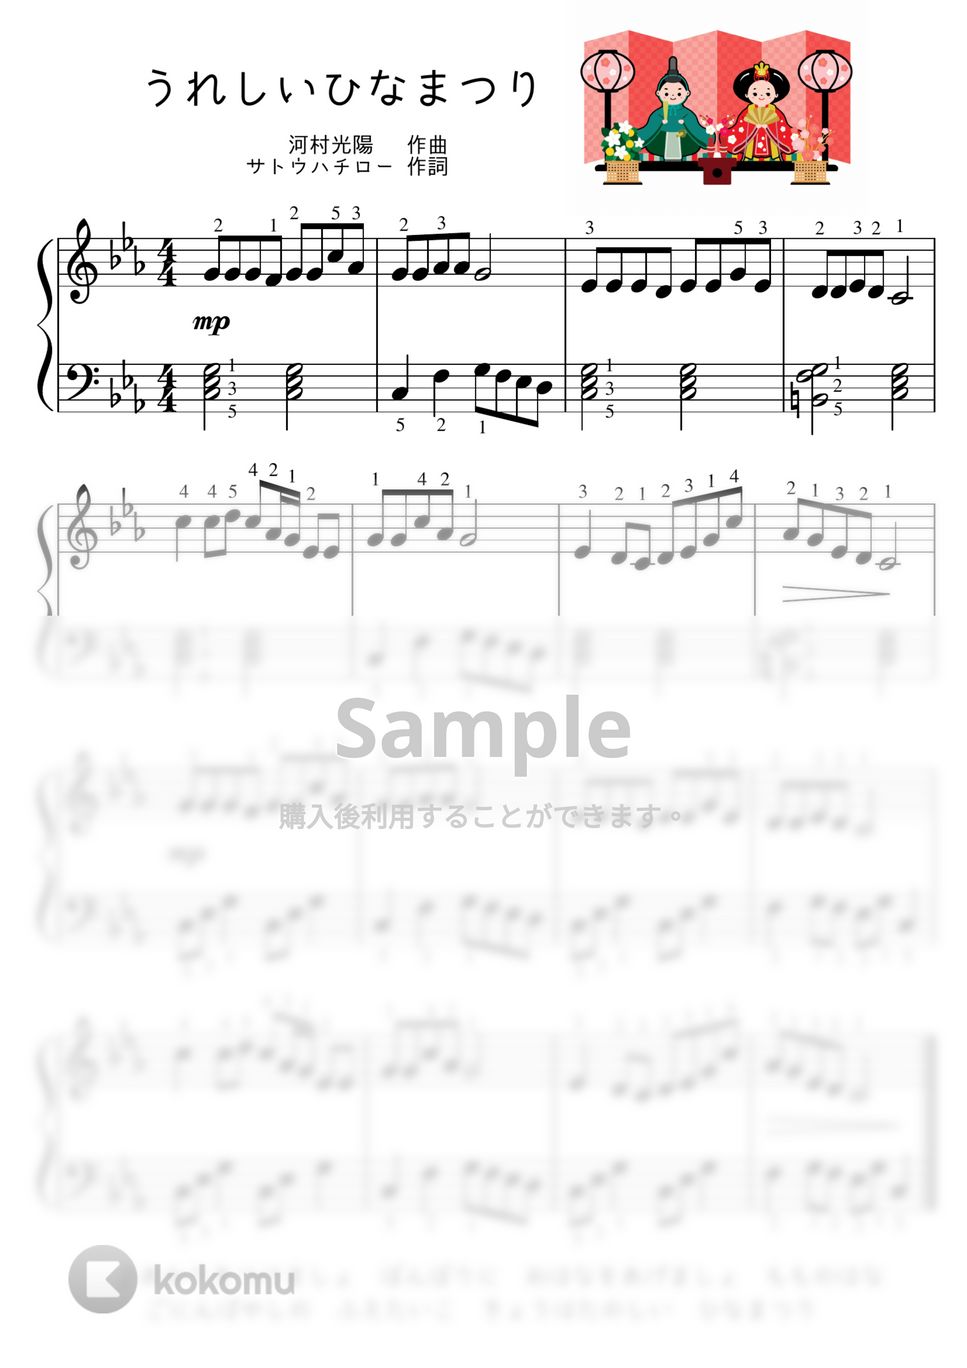 【初級】うれしいひなまつり♪ (ひなまつり,春,桃,桃の節句) by ピアノのせんせいの楽譜集